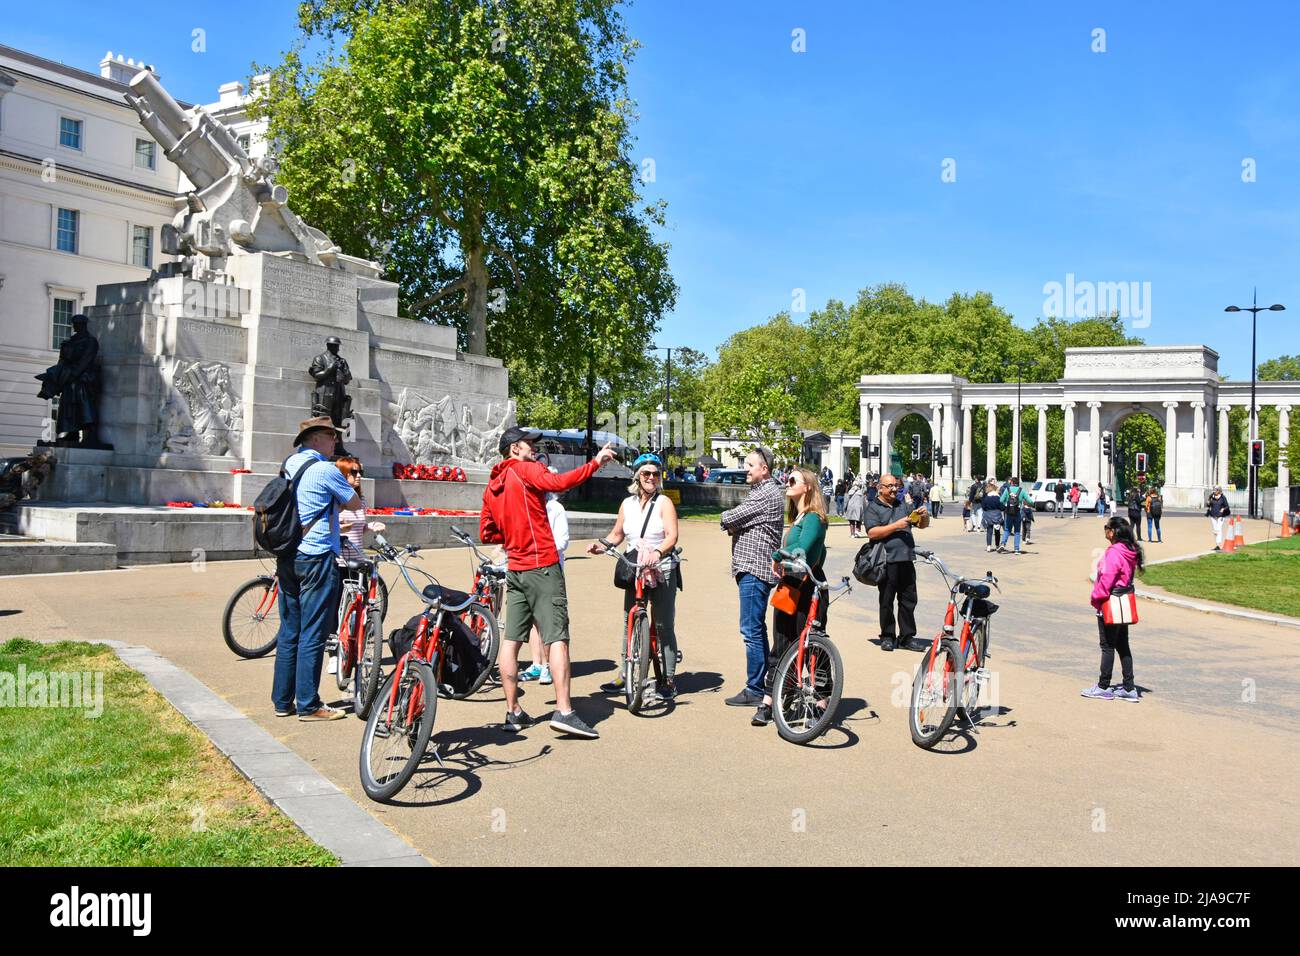 Guide touristique pointant visite guidée pour un groupe d'hommes et de femmes touristes sur des vélos loués lors d'une visite à Hyde Park Corner Londres Angleterre Royaume-Uni Banque D'Images